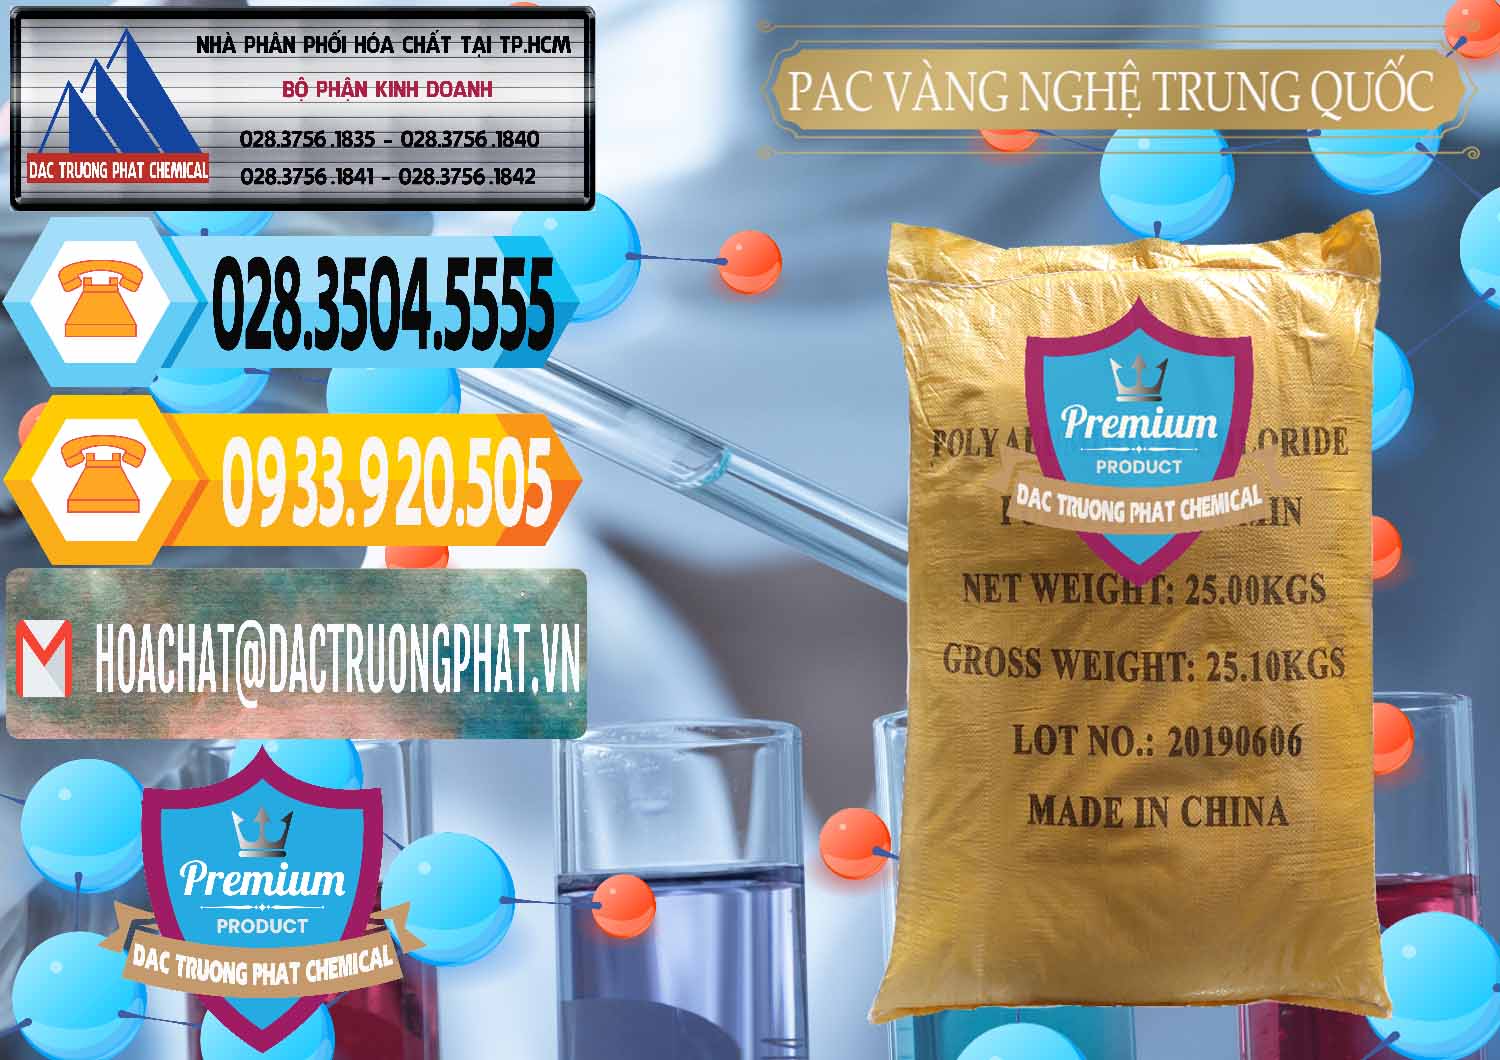 Đơn vị cung cấp & bán PAC - Polyaluminium Chloride Vàng Nghệ Trung Quốc China - 0110 - Cty chuyên cung cấp ( kinh doanh ) hóa chất tại TP.HCM - hoachattayrua.net